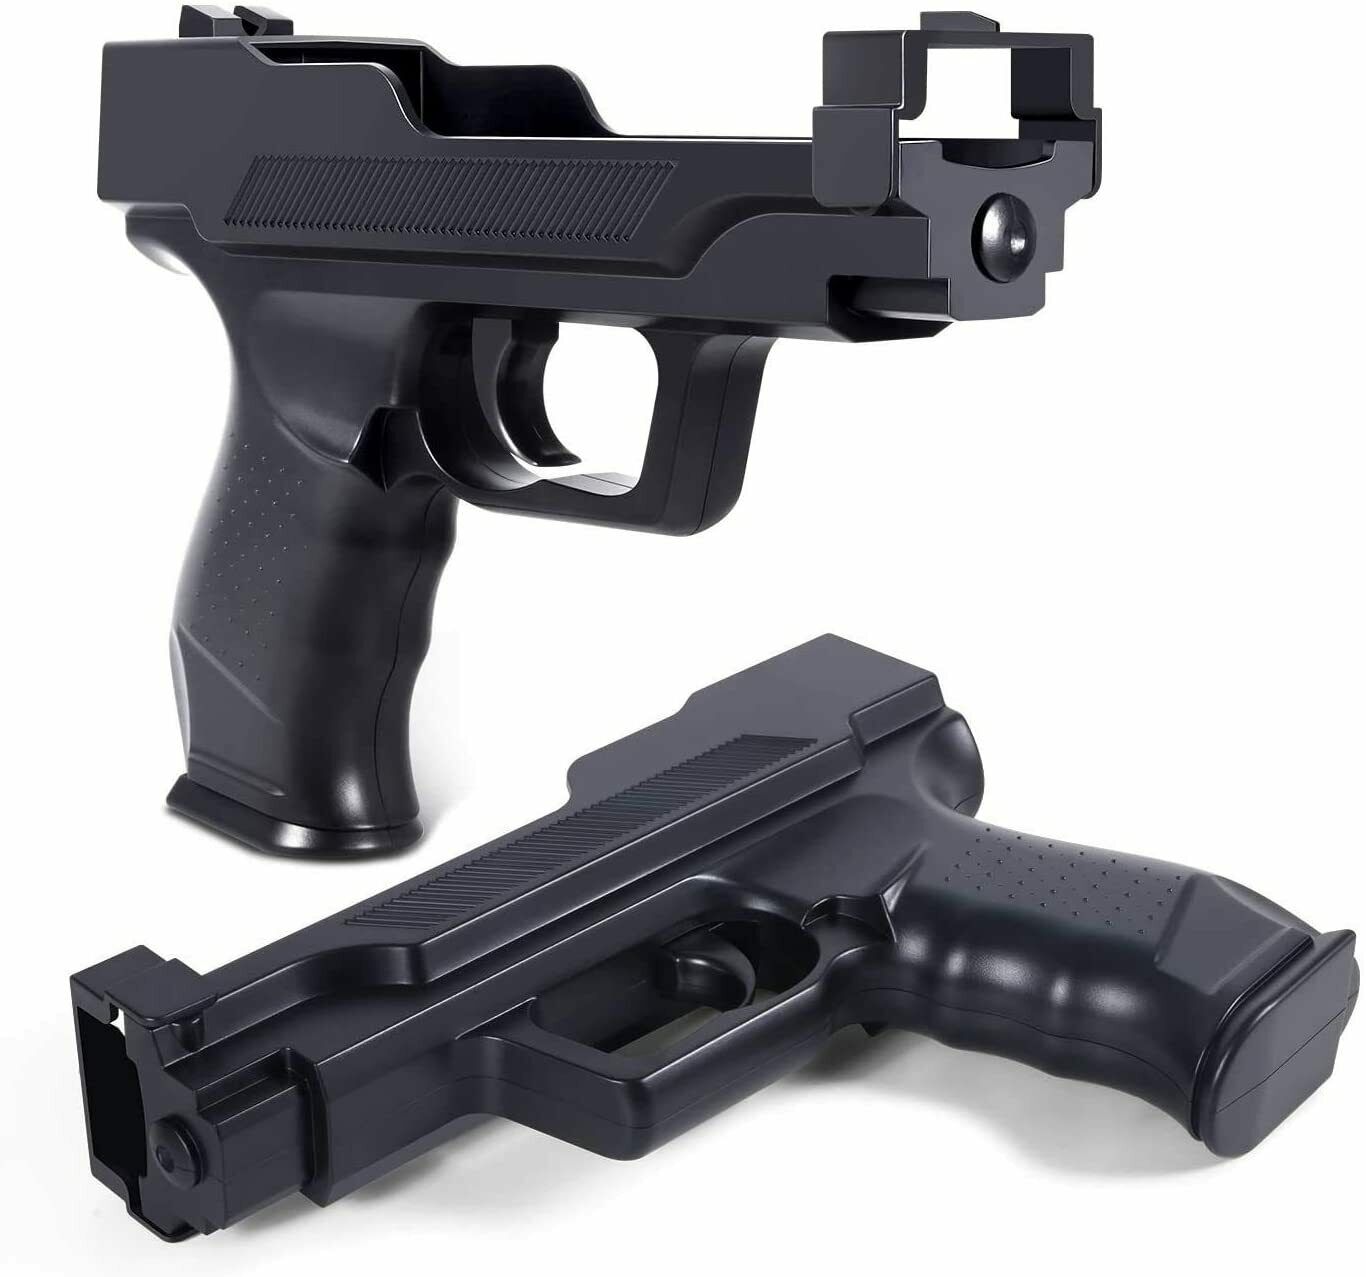 Wii Motion Plus Gun for Nintendo Wii Remote Controller wii zapper gun 2 pack Platform: Nintendo Wi